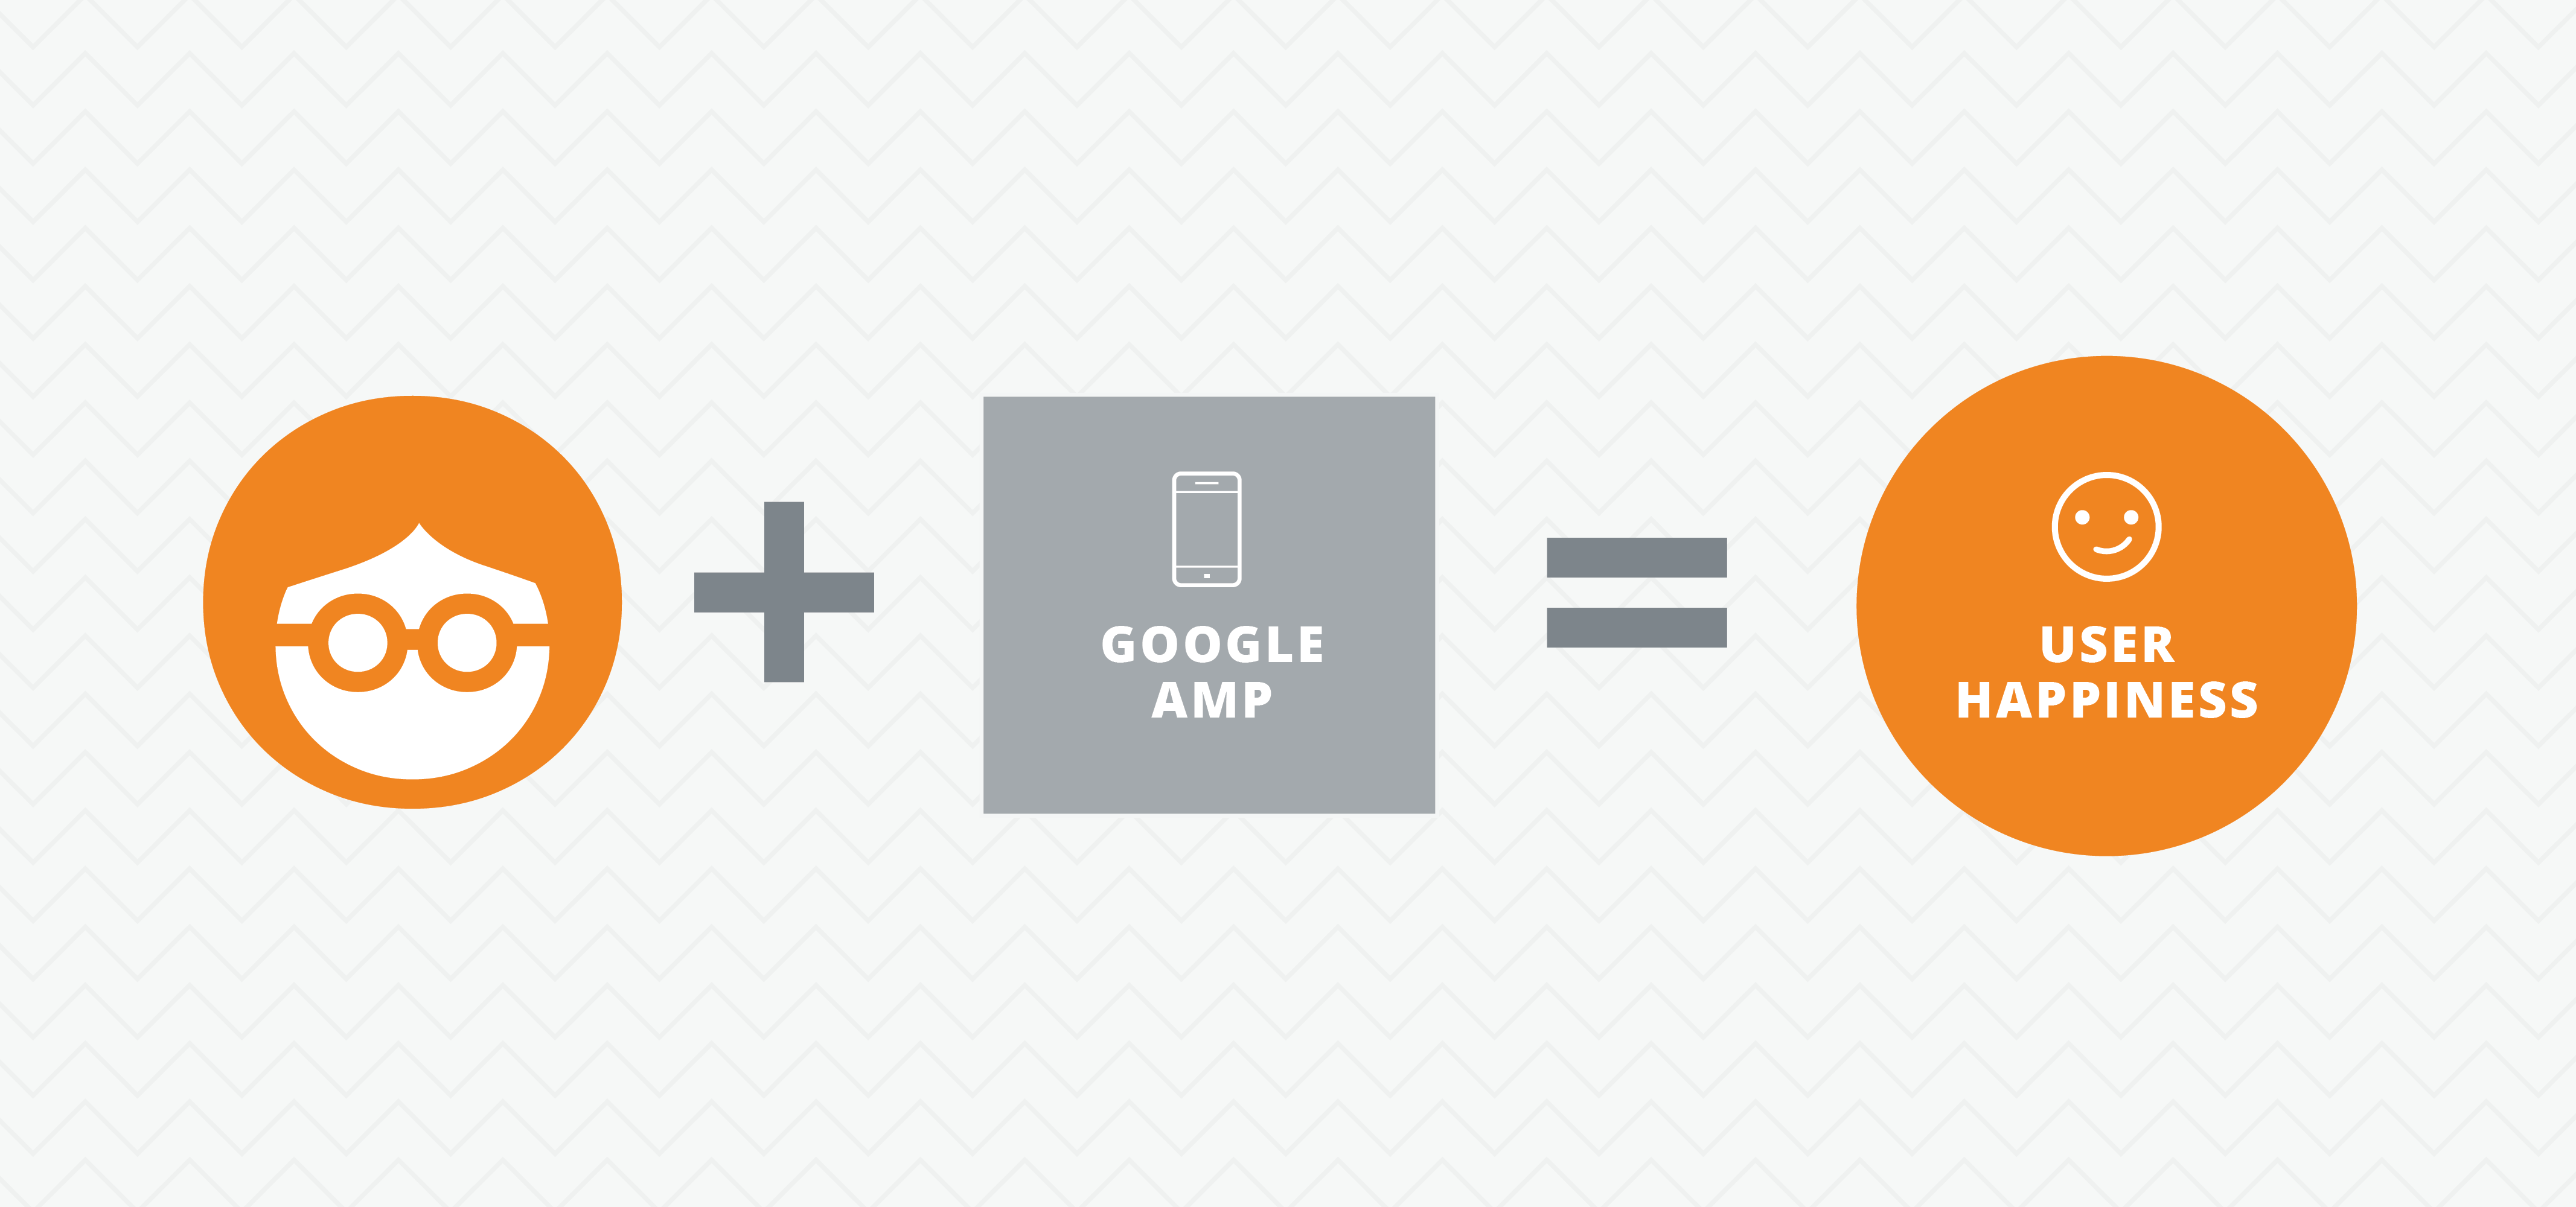 AMP Benefits to Website